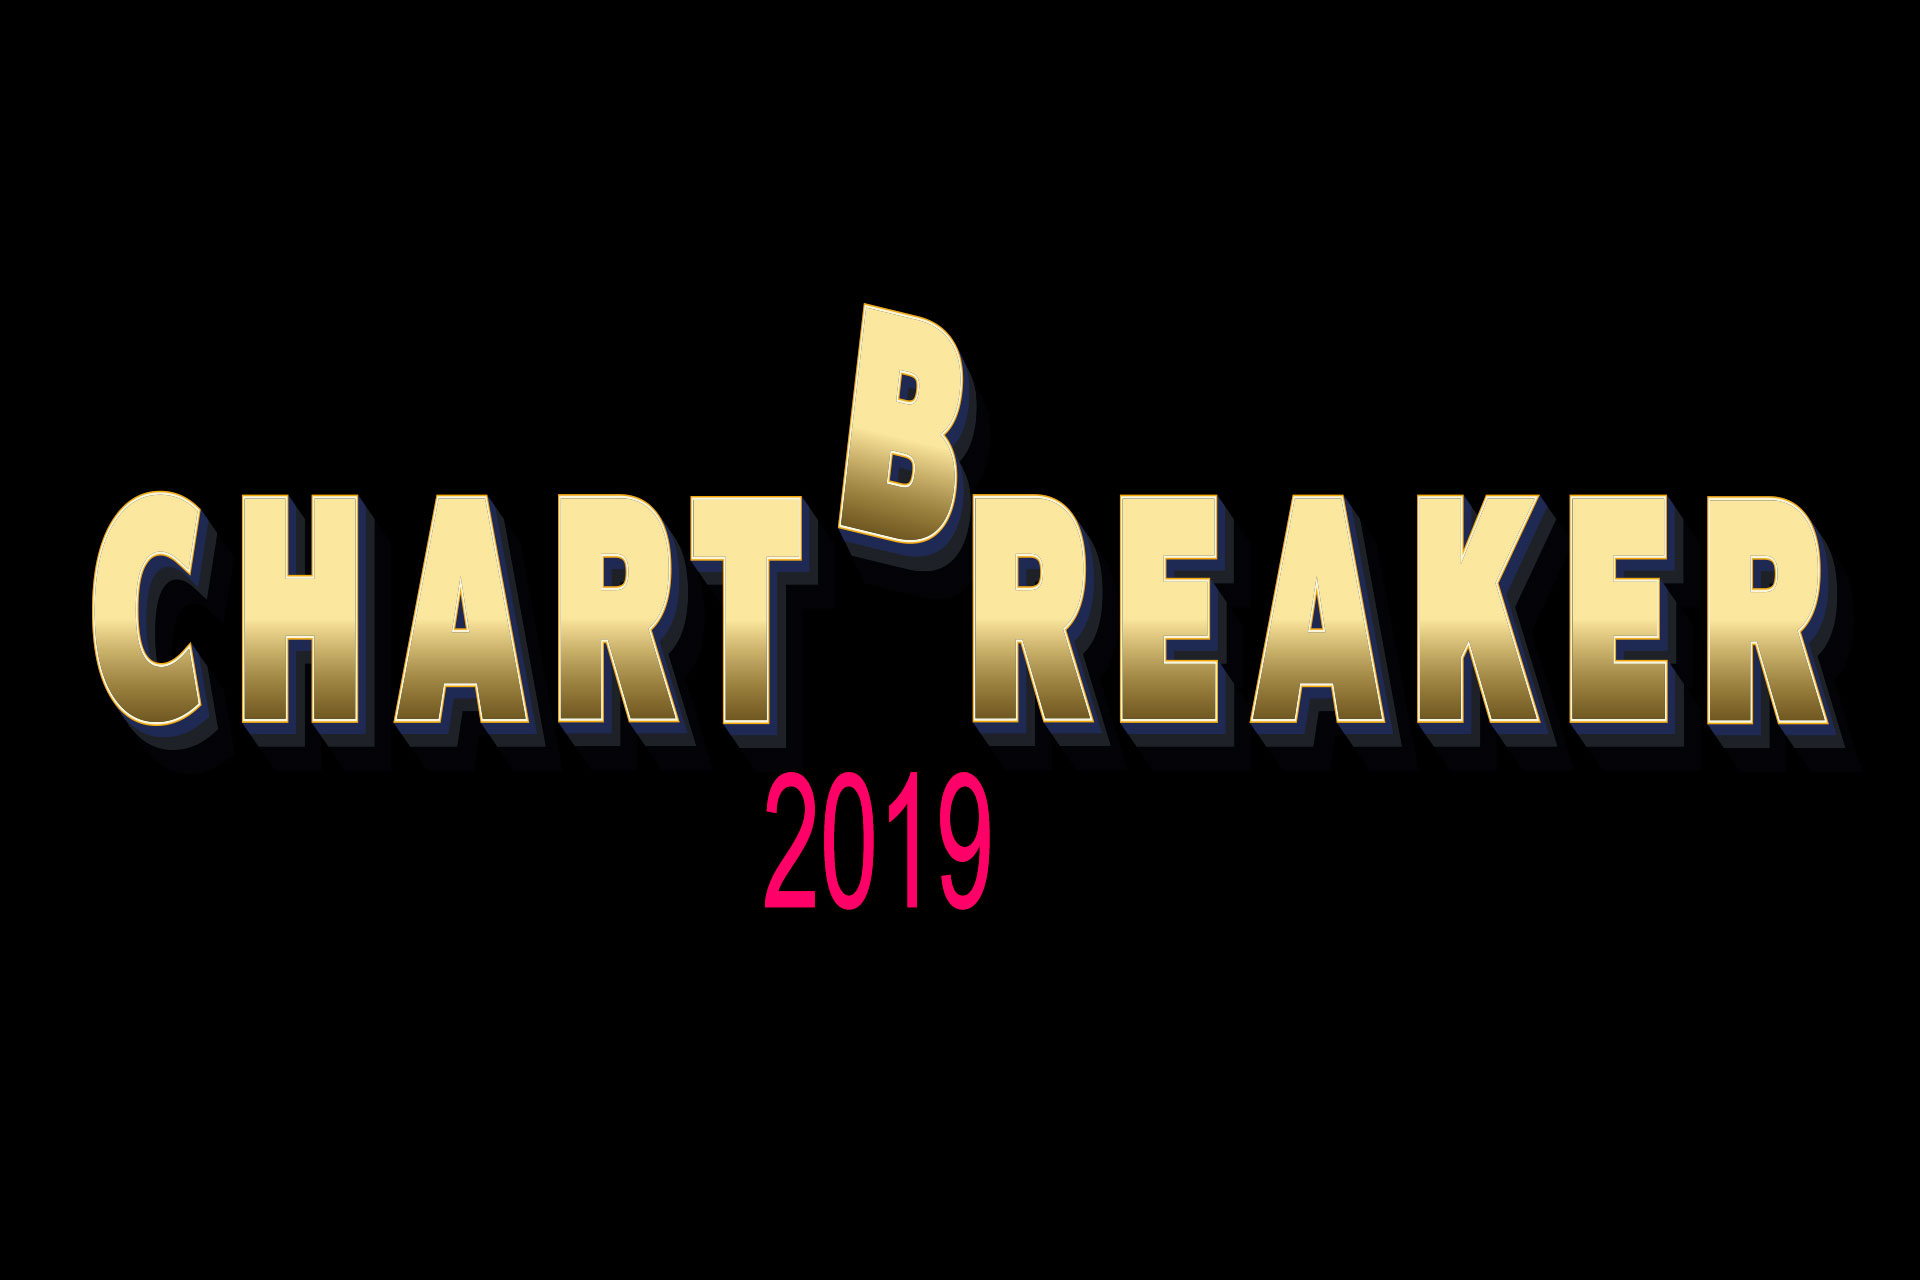 Chartbreaker 2019